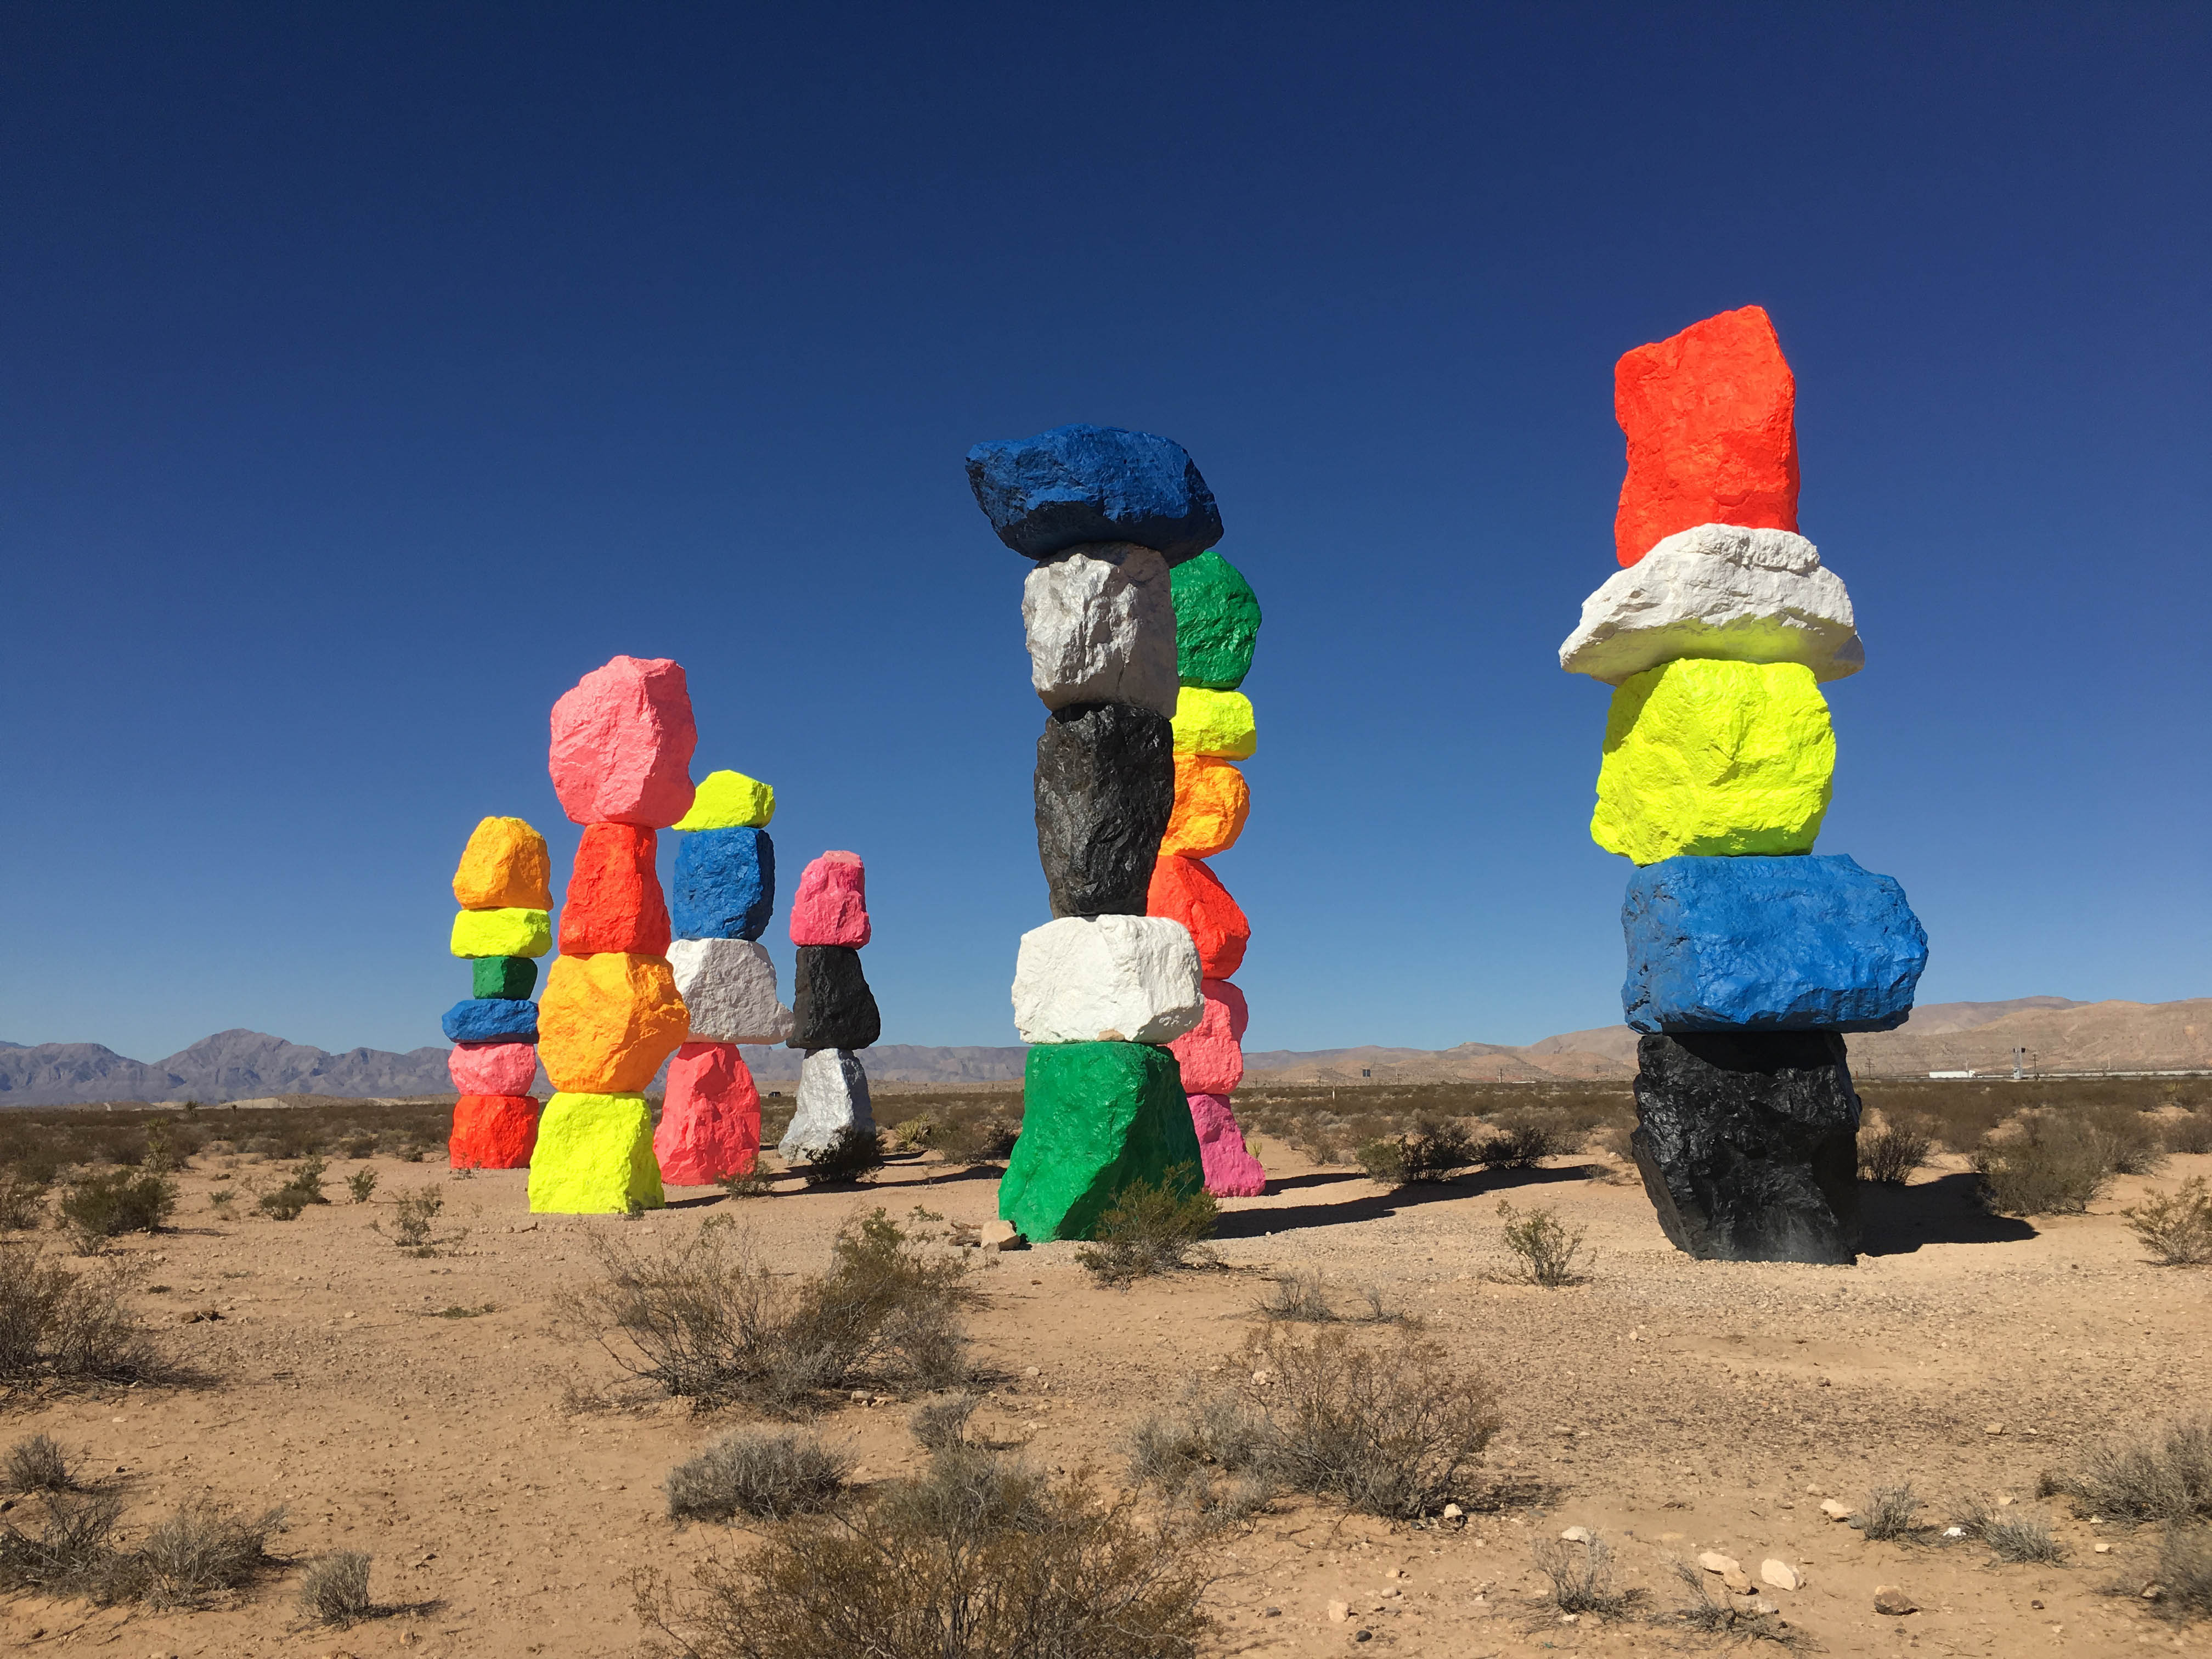 stacked neon rock sculptures in the desert